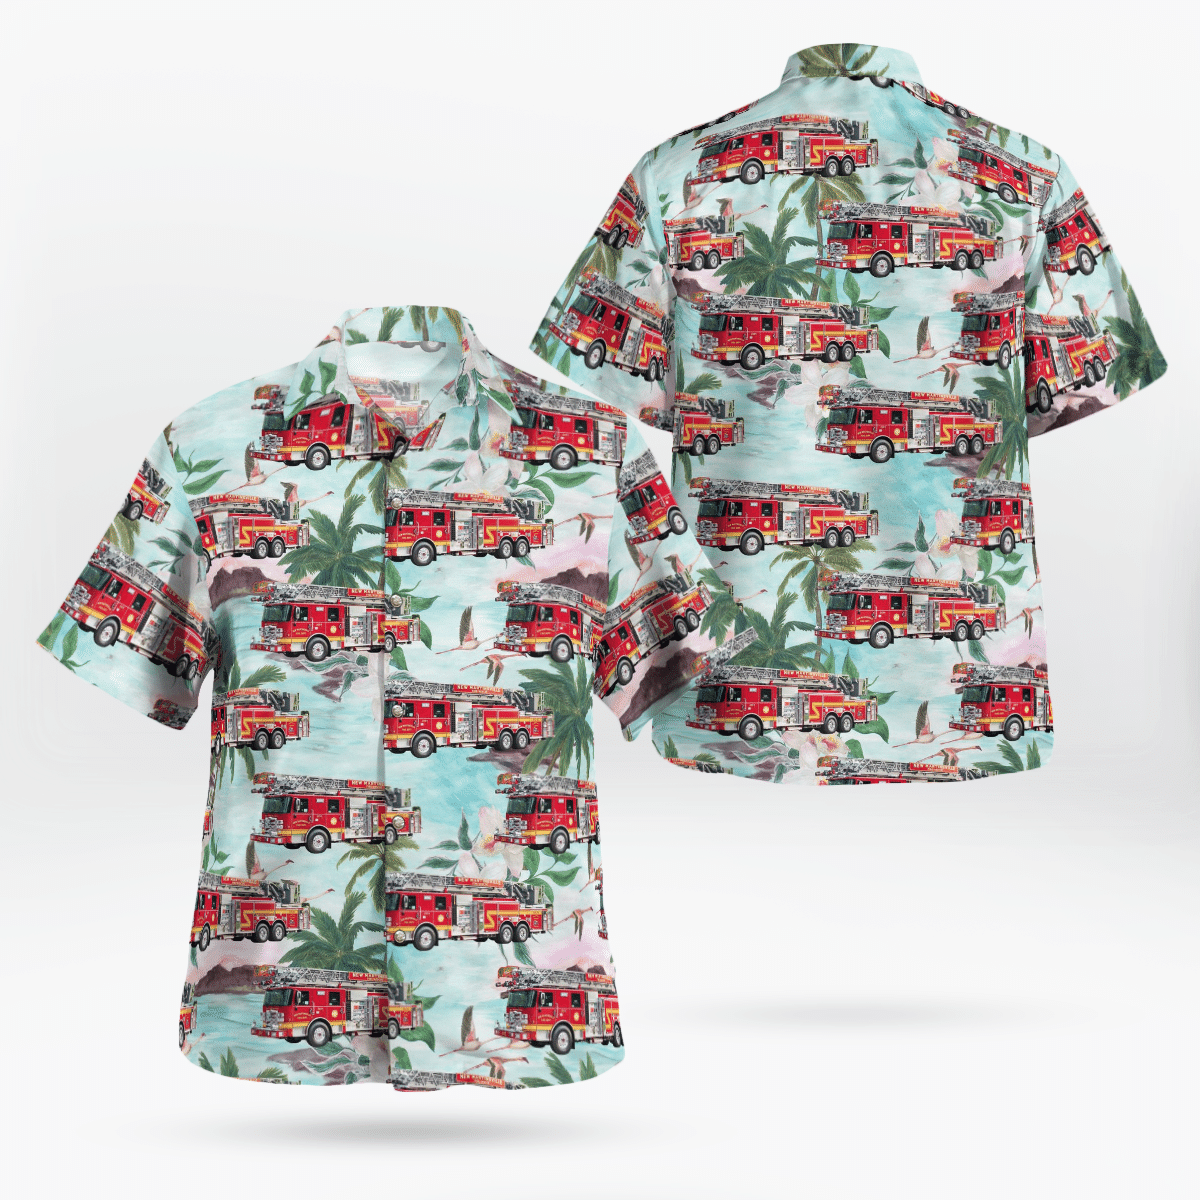 You won't regret buying these Aloha Shirt 153